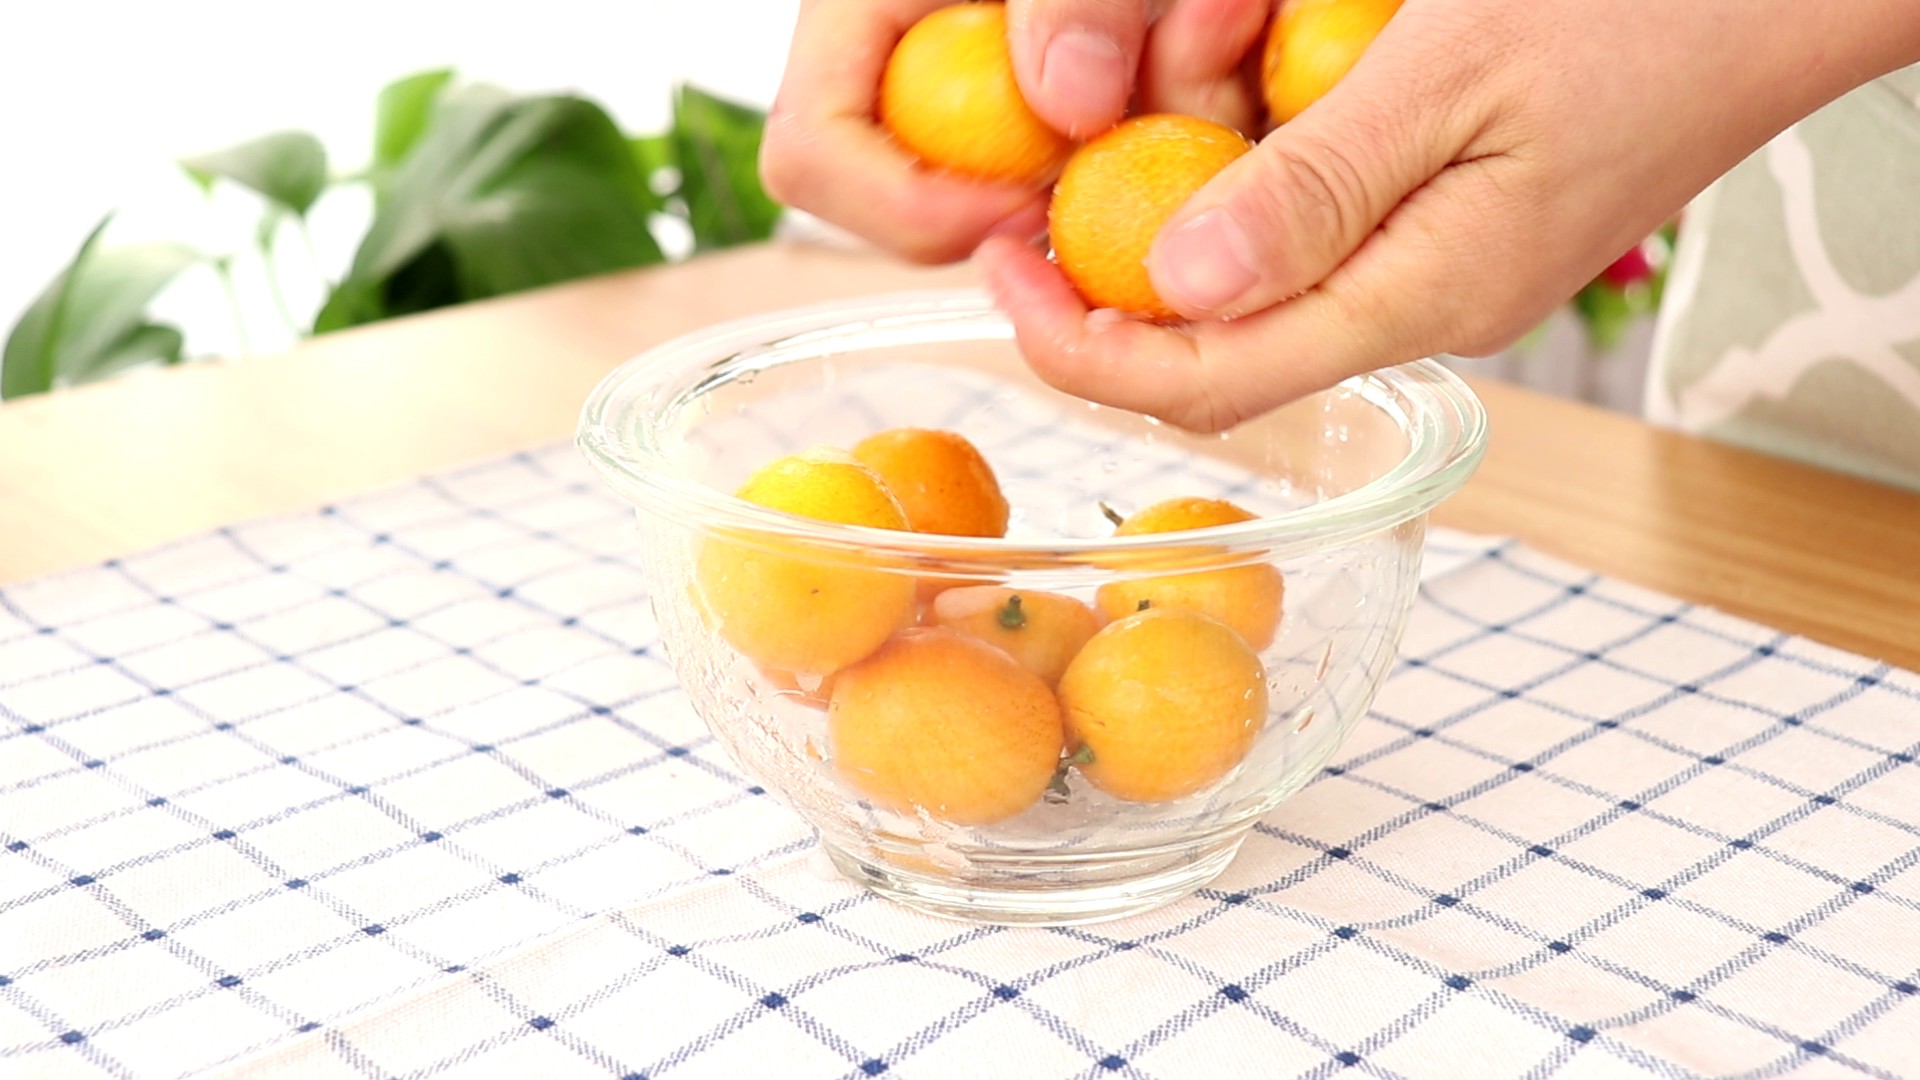 蜜饯金桔 宝宝零食,用手搓洗金桔表面</p>
<p>tips：盐可以消除金桔表面残留的农药